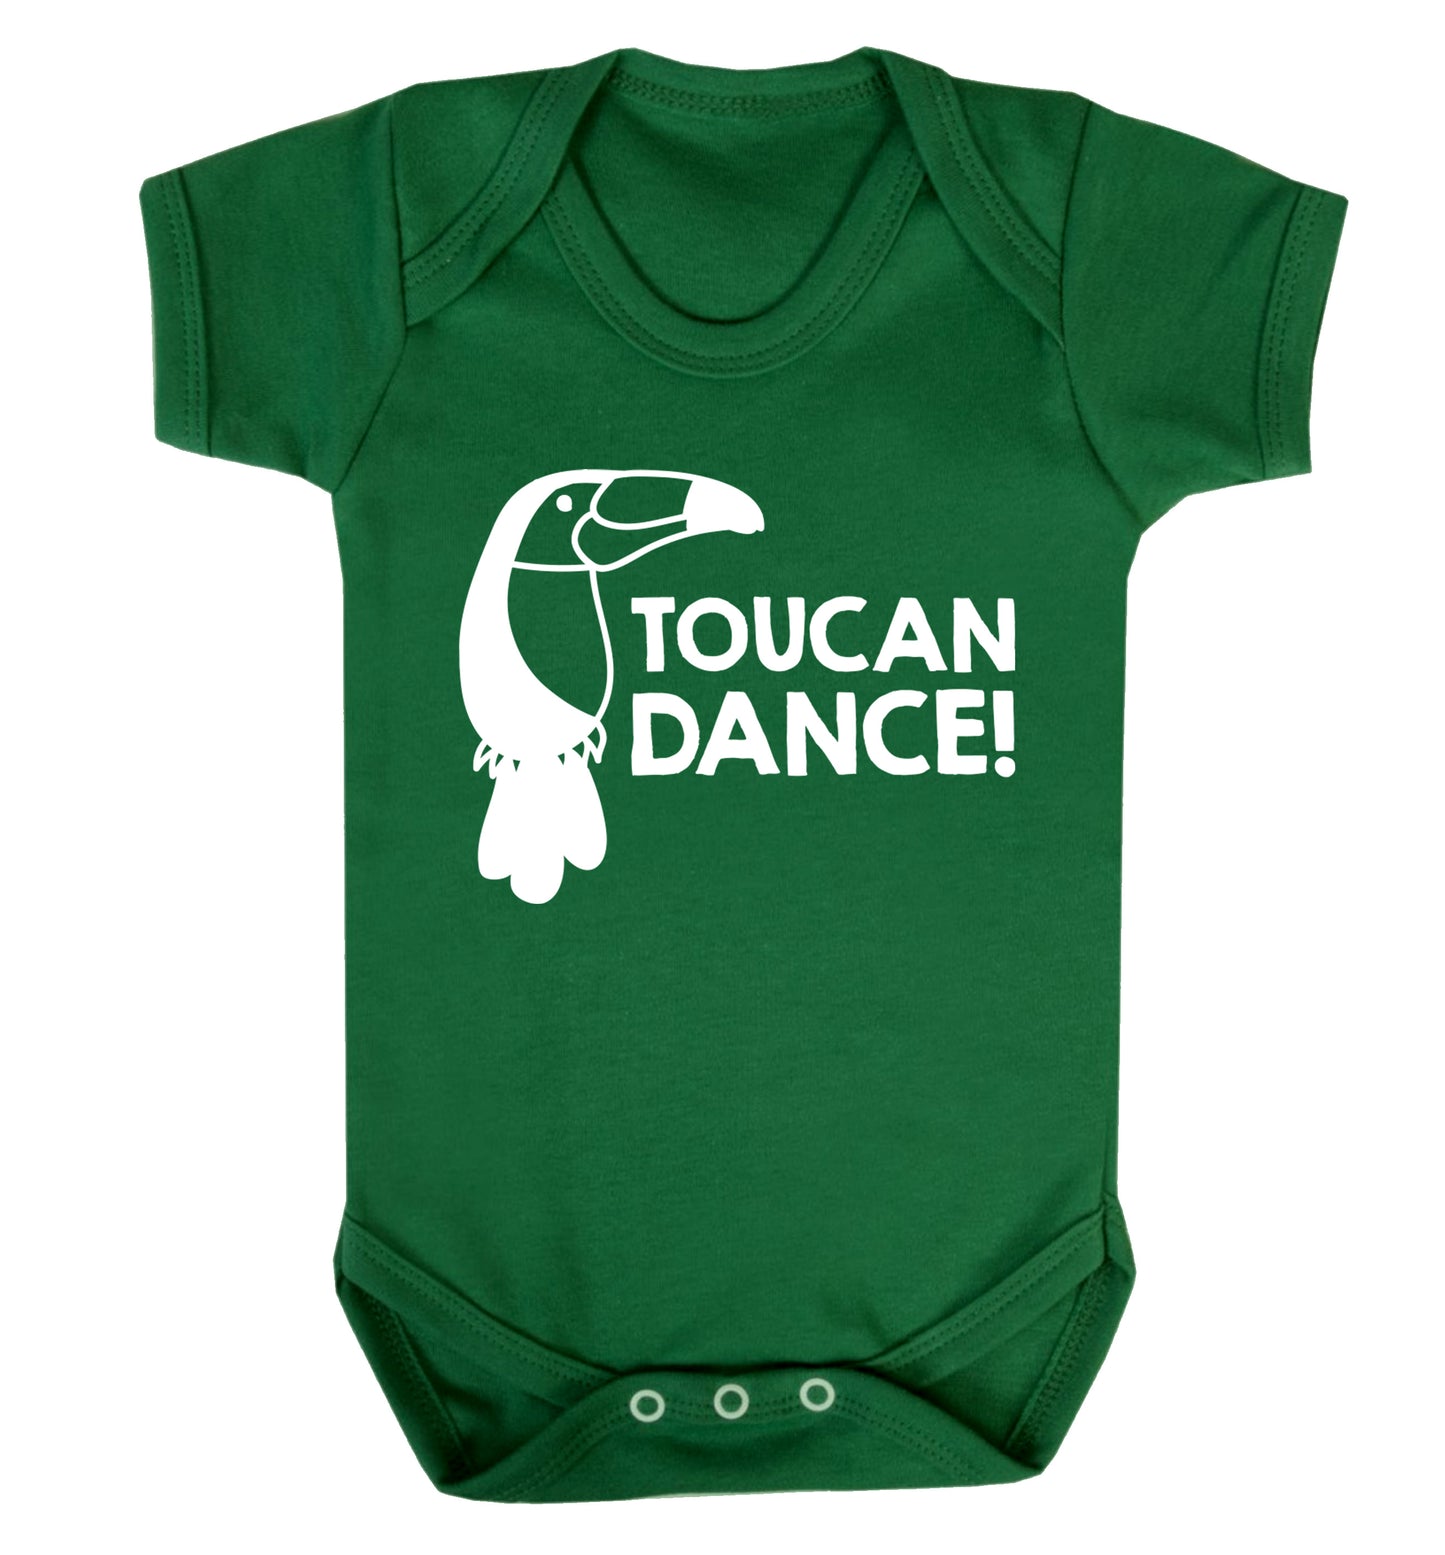 Toucan dance Baby Vest green 18-24 months